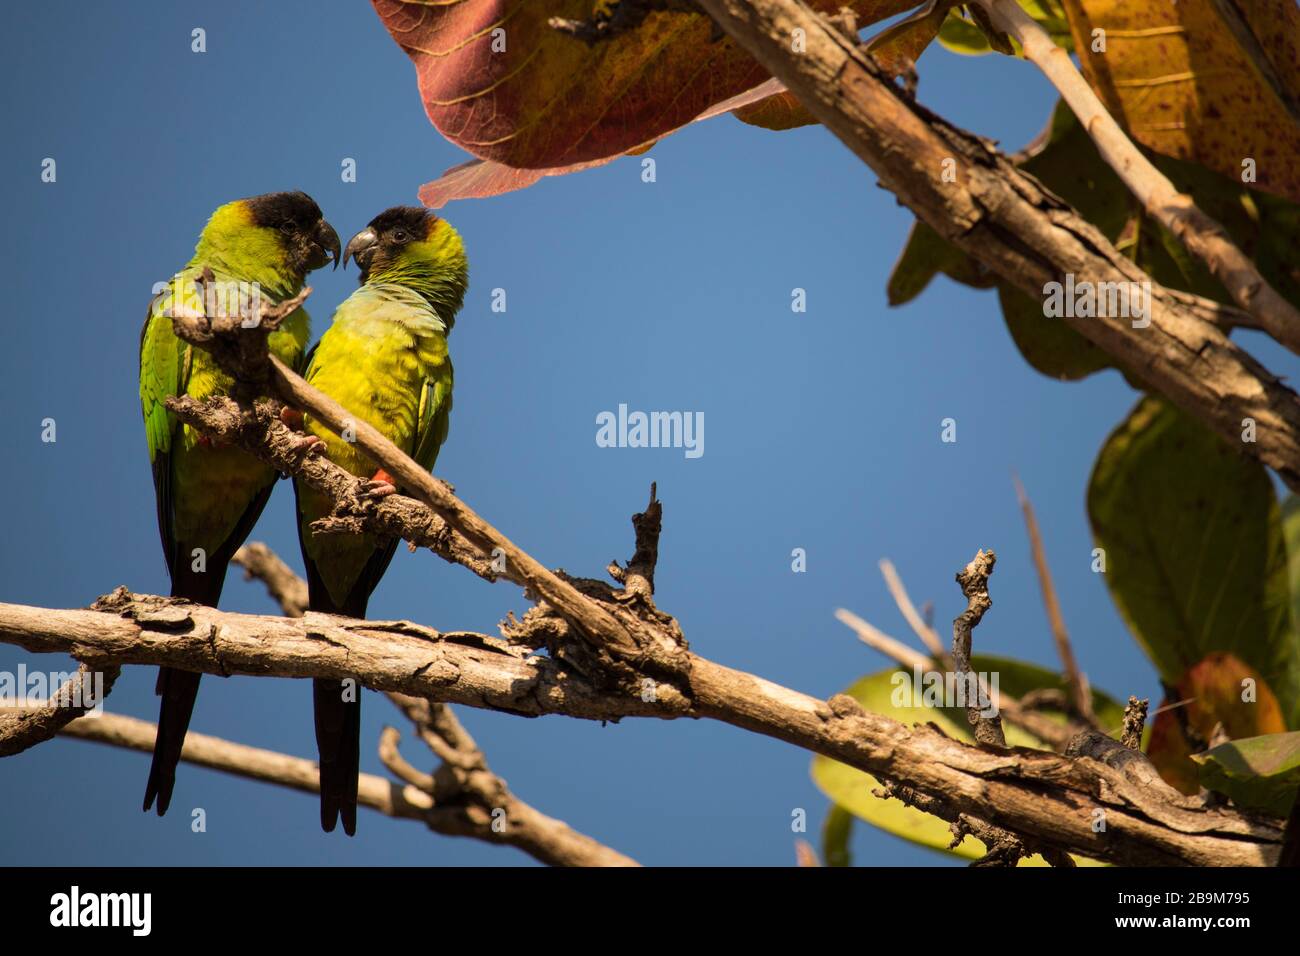 Maritaca namorando na árvore, Ladário, MS, Brazil Stock Photo